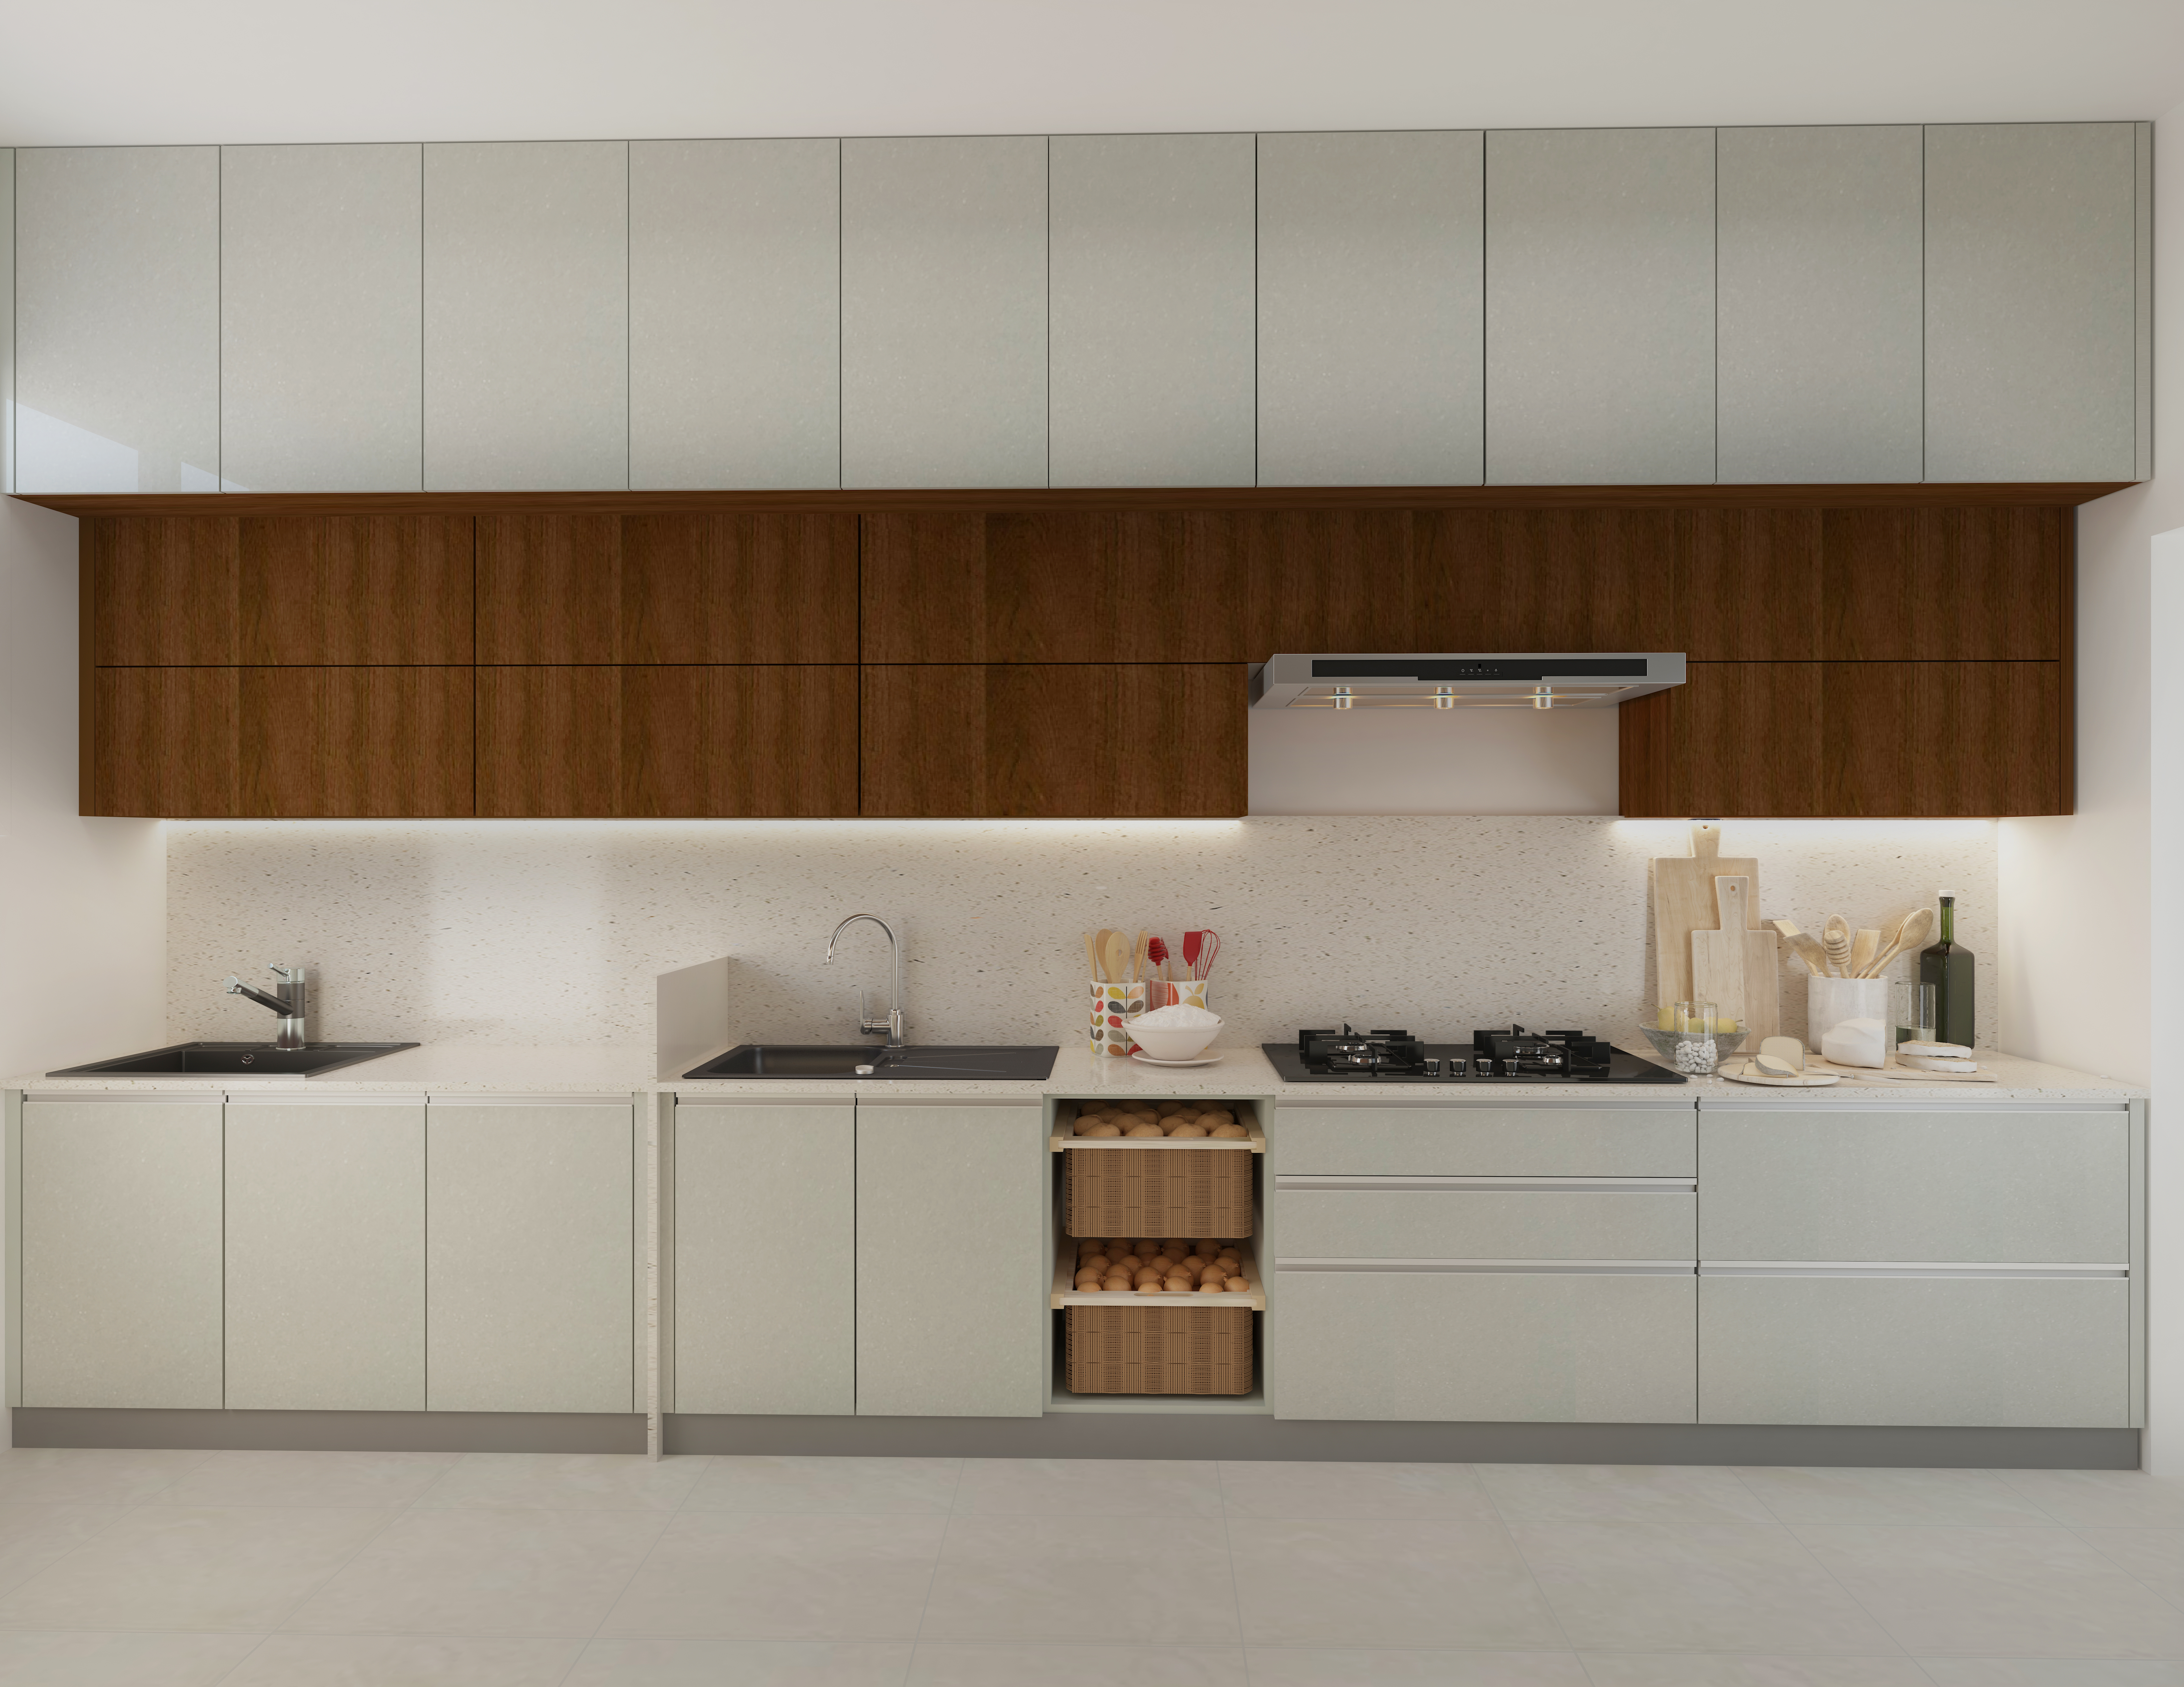 Straight kitchen designed by moduleightt